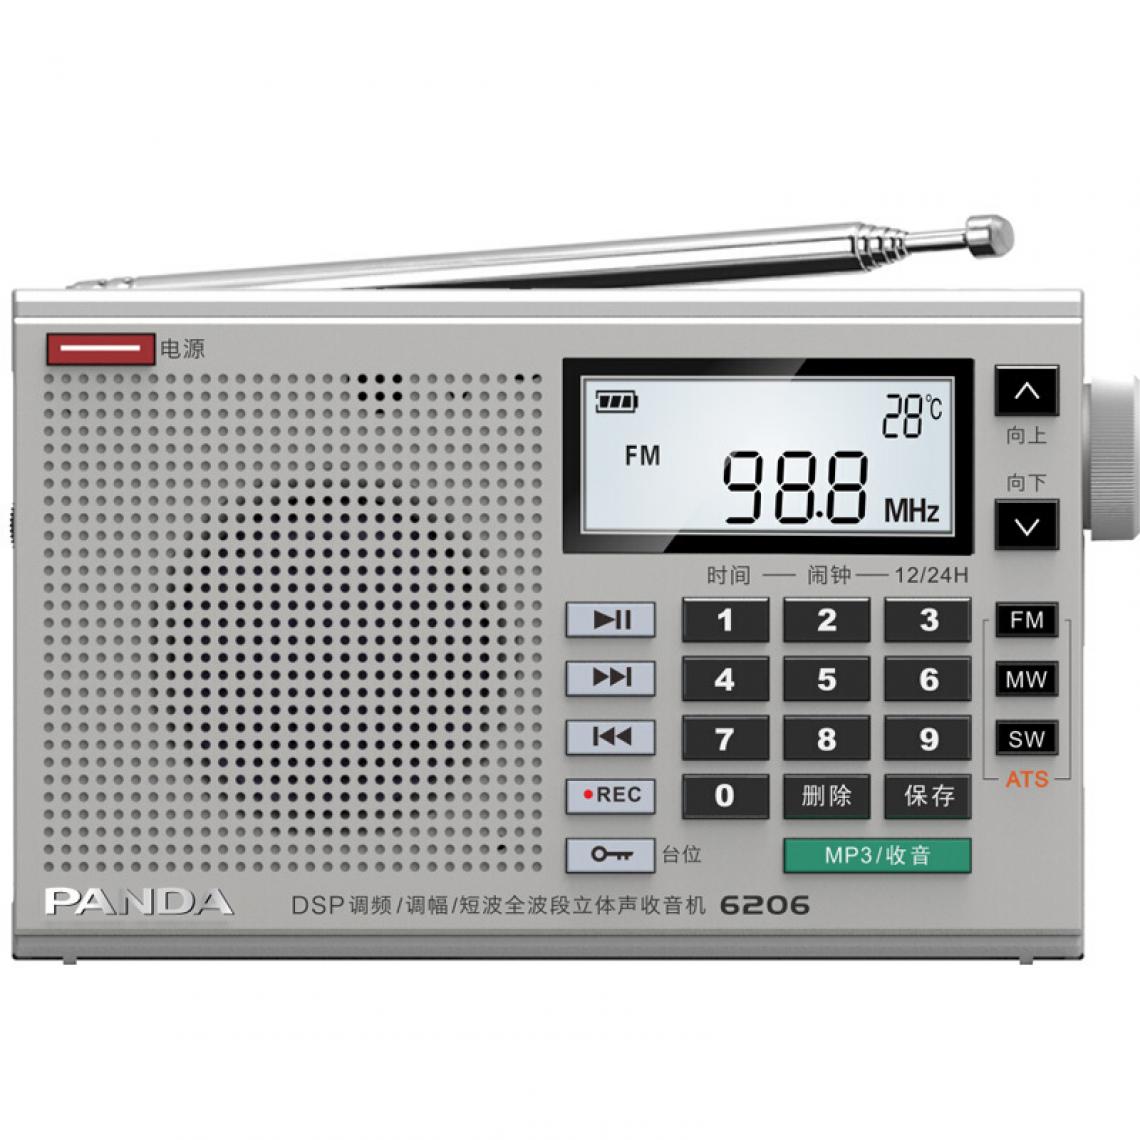 Universal - Nouvelle radio stéréo DSP Full Band Portable Player Home Radio FM Récepteur numérique Radio Mini Haut-parleur Support FM AM SW MW | Radio(blanche) - Radio